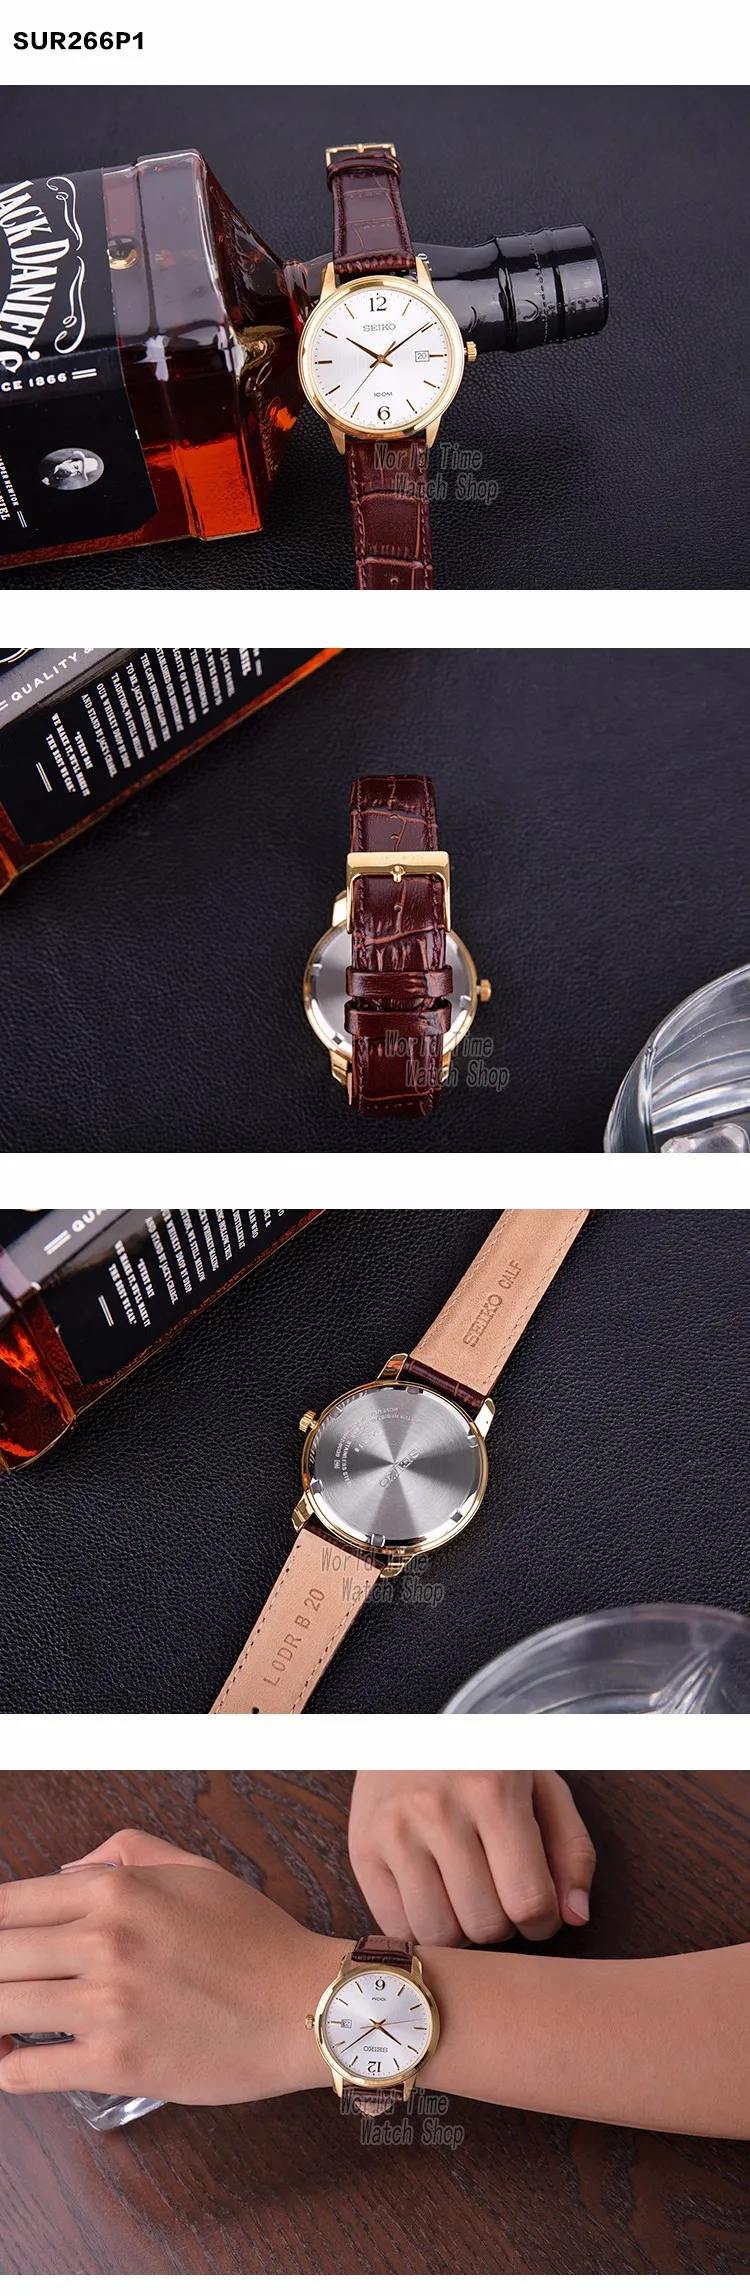 Seiko часы мужские Топ люксовый бренд водонепроницаемые спортивные наручные часы для мужчин Дата кварцевые часы мужские часы Relogio Masculin SUR263